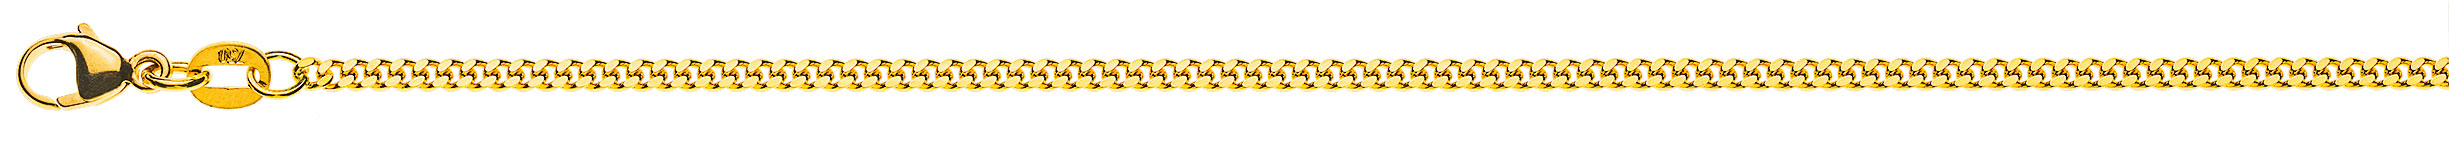 AURONOS Prestige Halskette Gelbgold 18K Panzerkette geschliffen 45cm 2.0mm